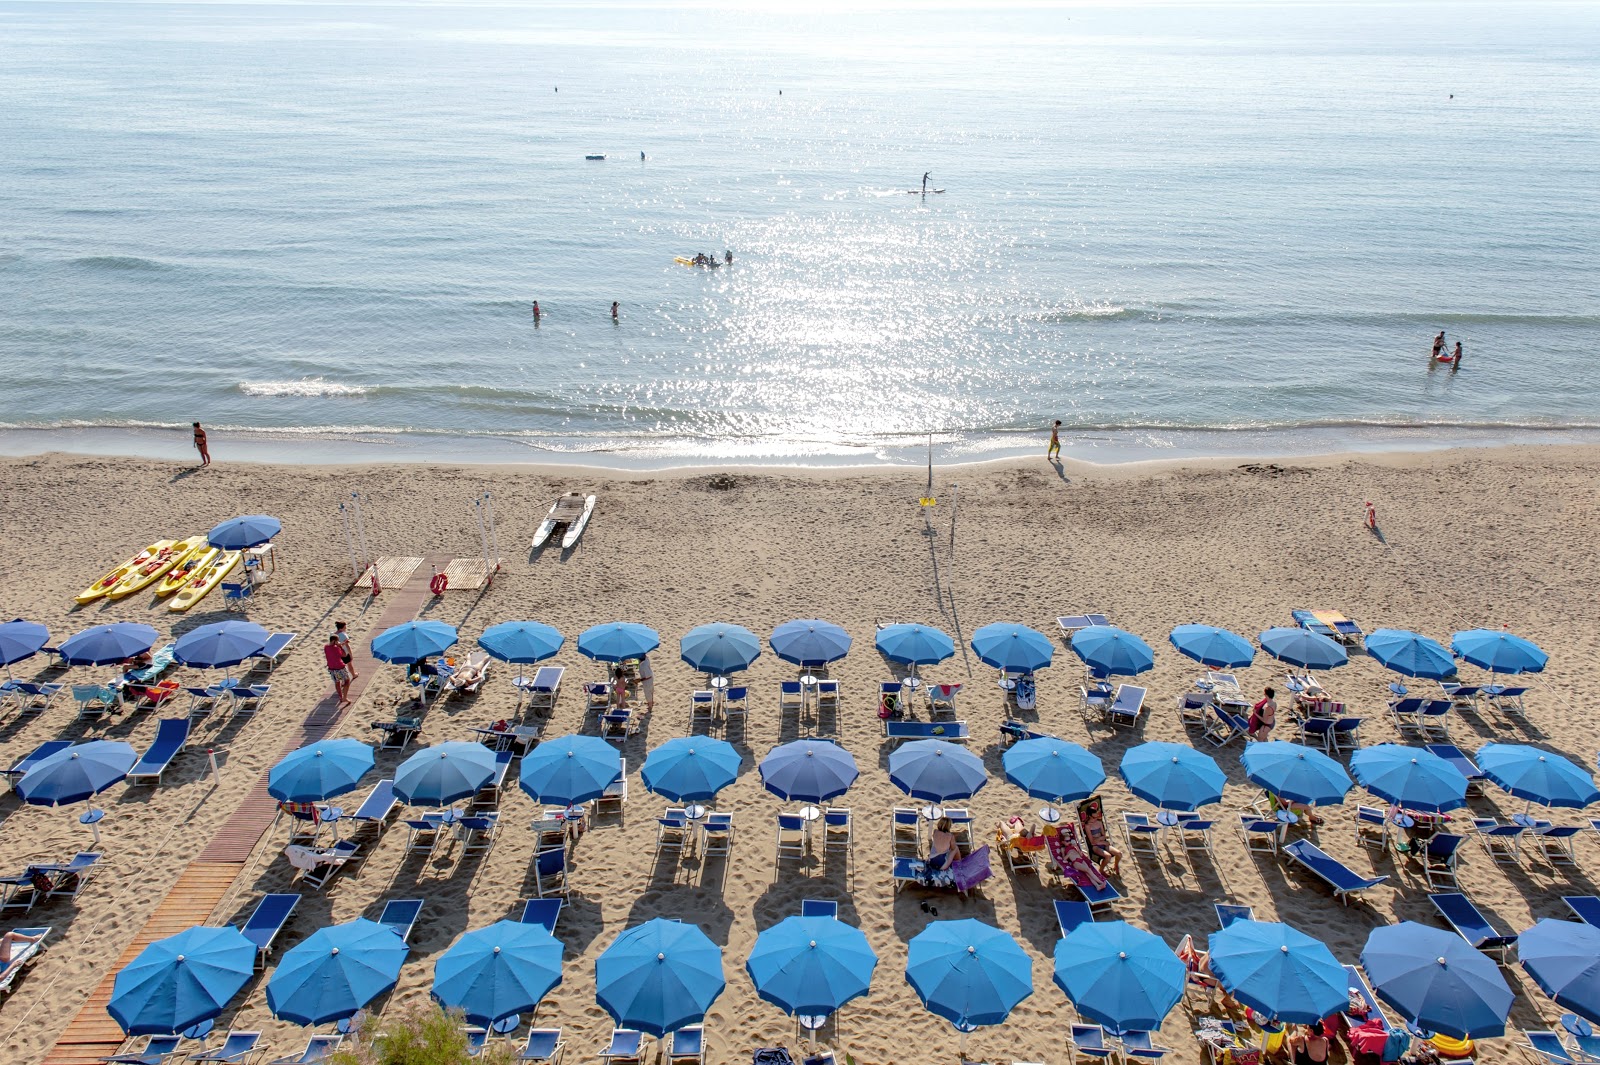 San Vincenzo beach'in fotoğrafı - Çocuklu aile gezginleri için önerilir